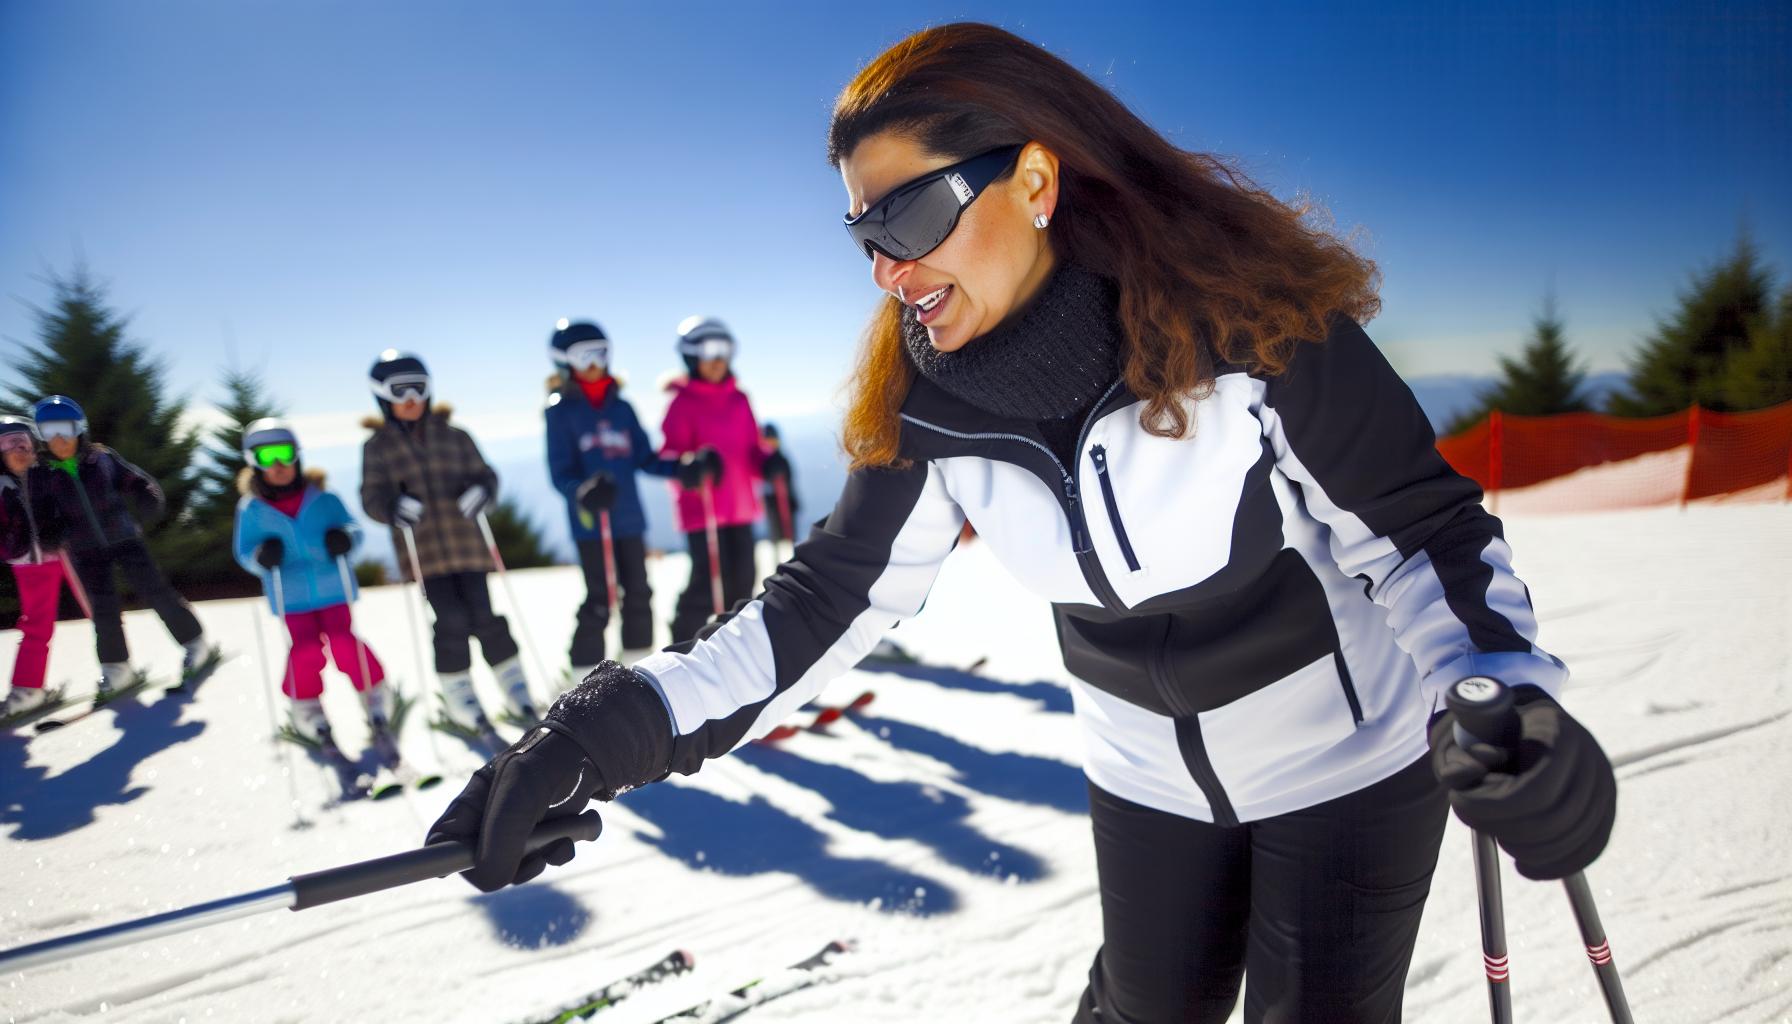 Vrouwelijke skileraar